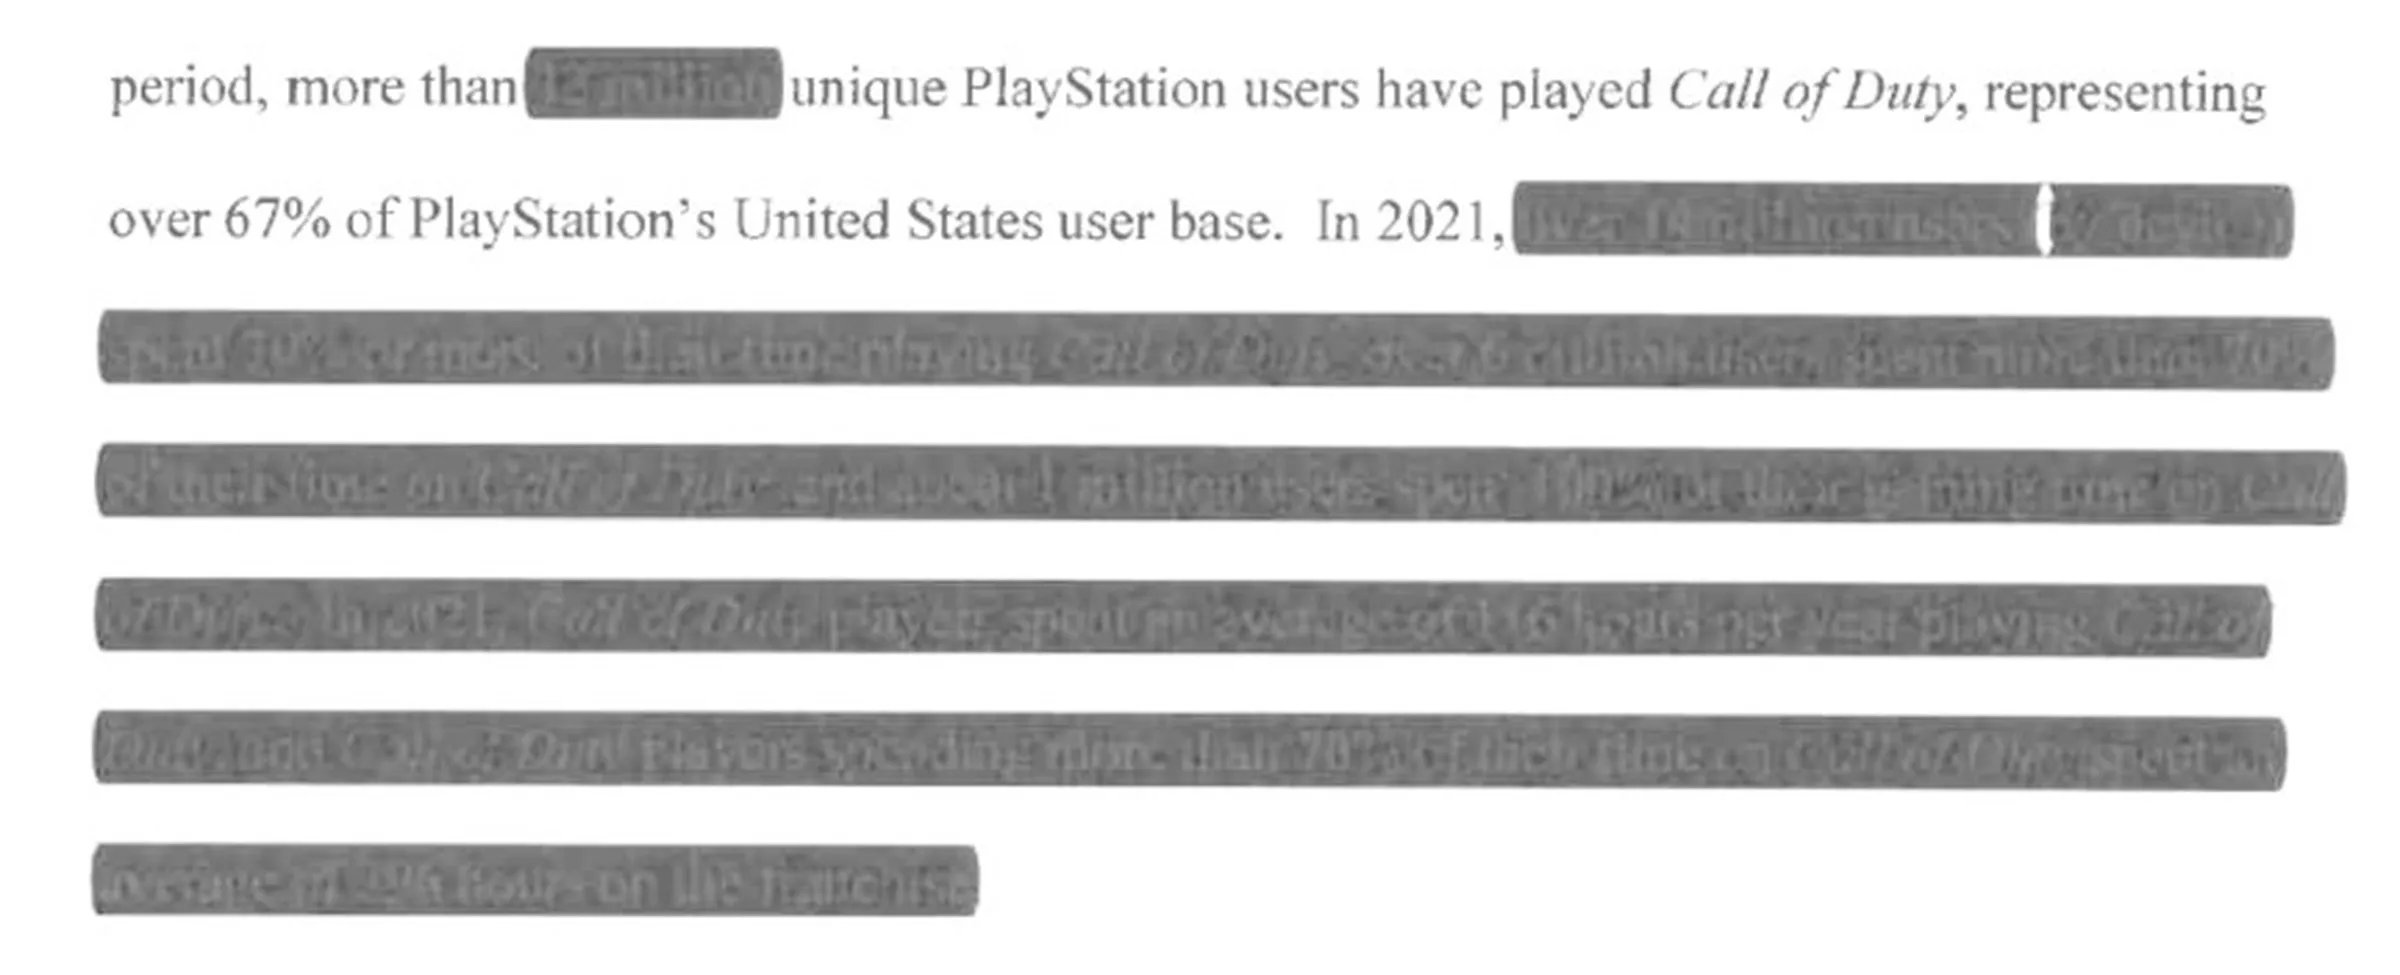 21年超100万PS玩家仅运行《COD》！更多细节透露